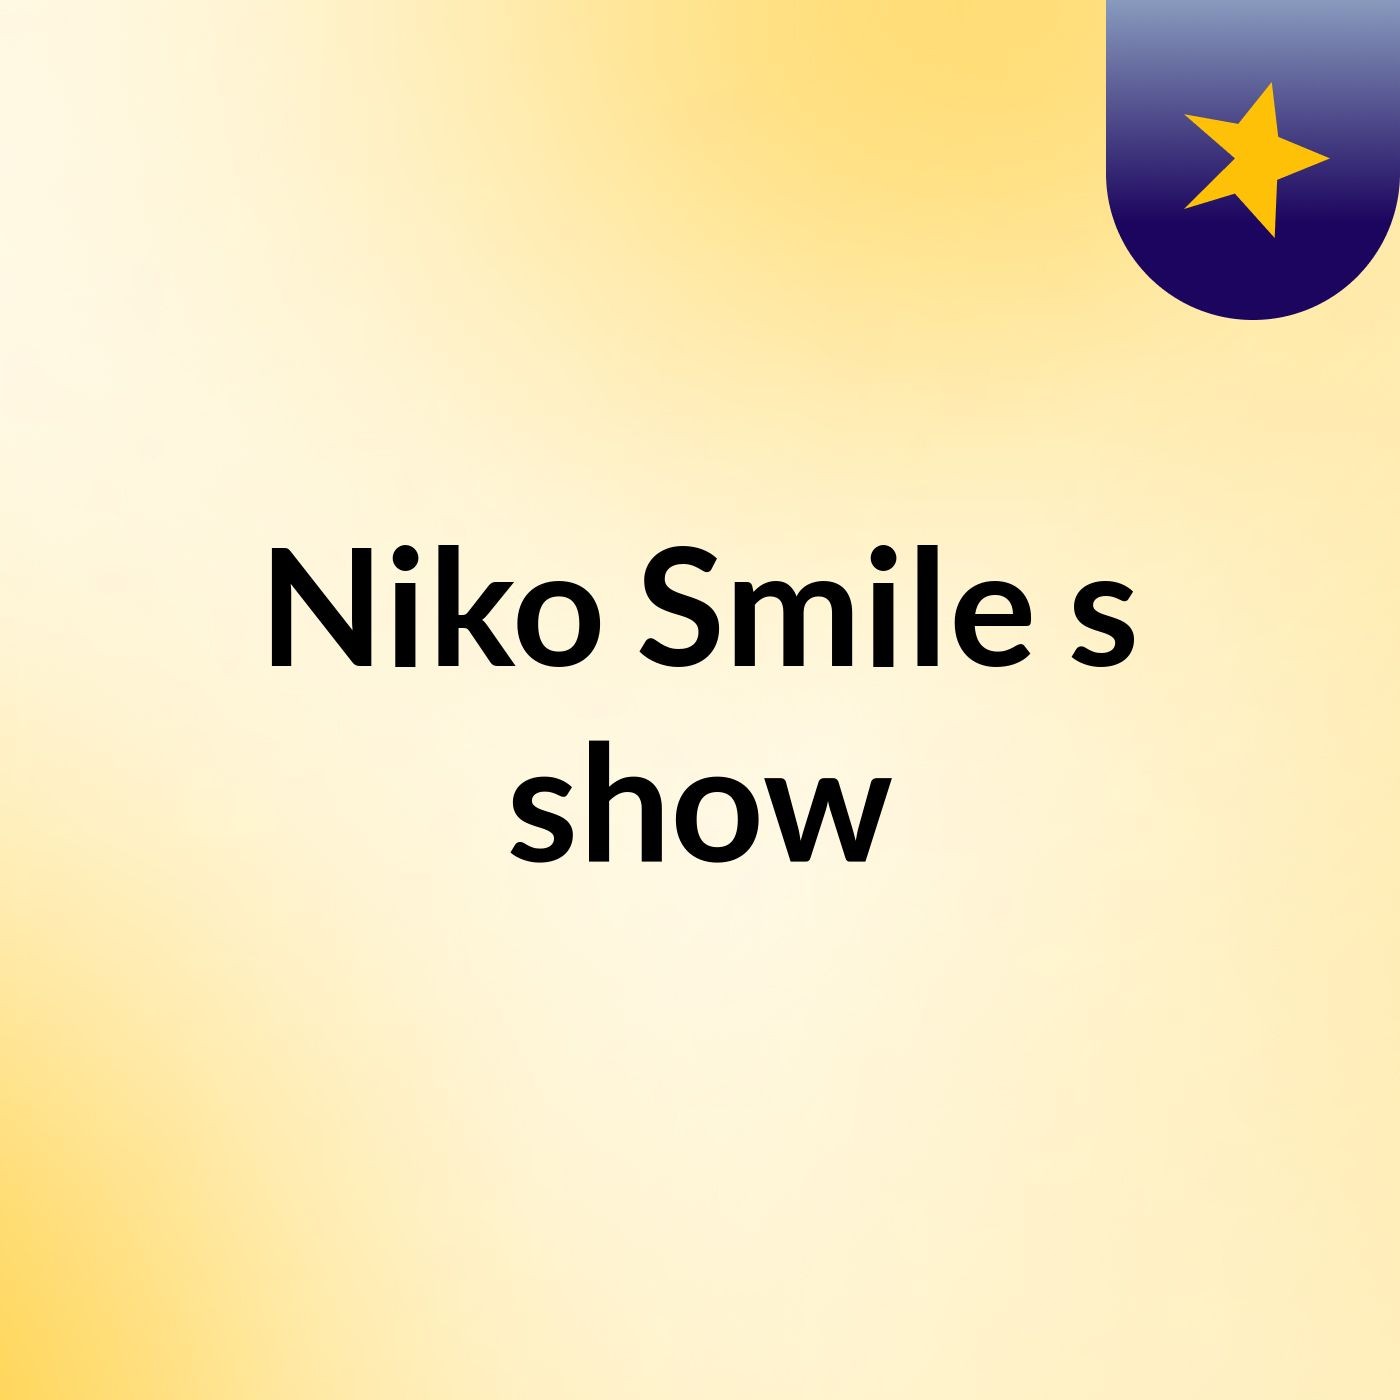 Niko Smile's show